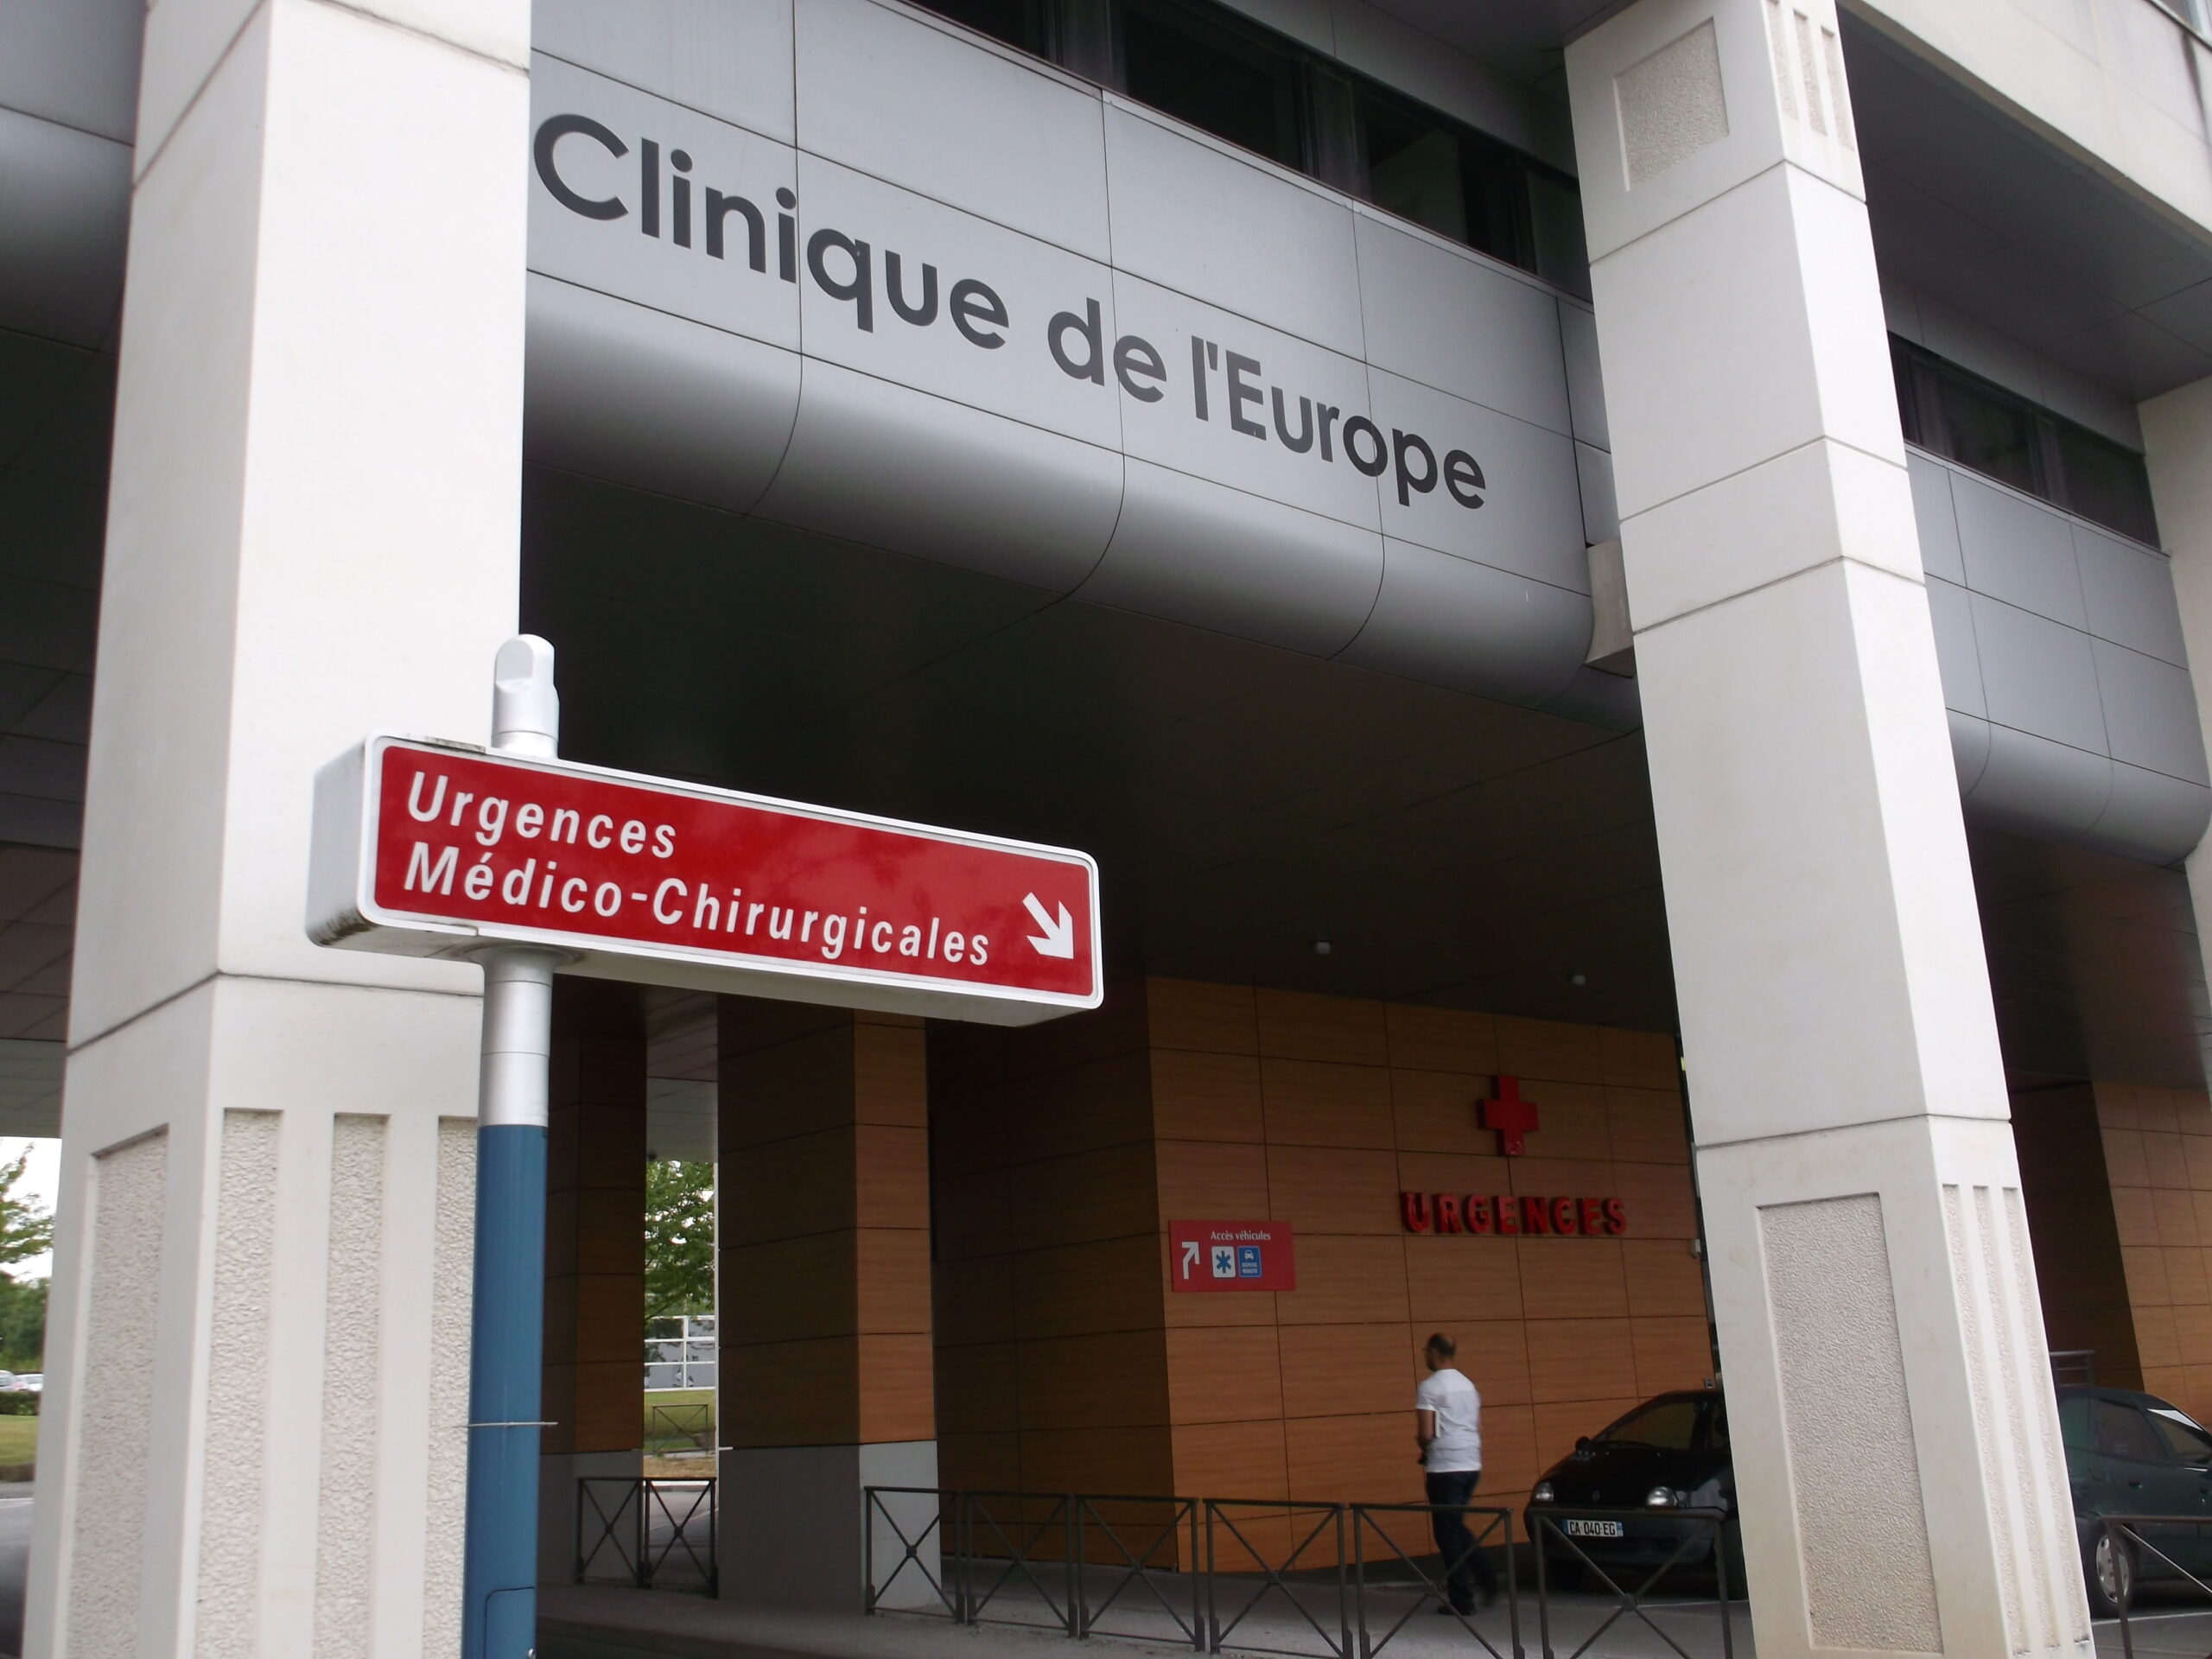 Polyclinique de Picardie Urgences